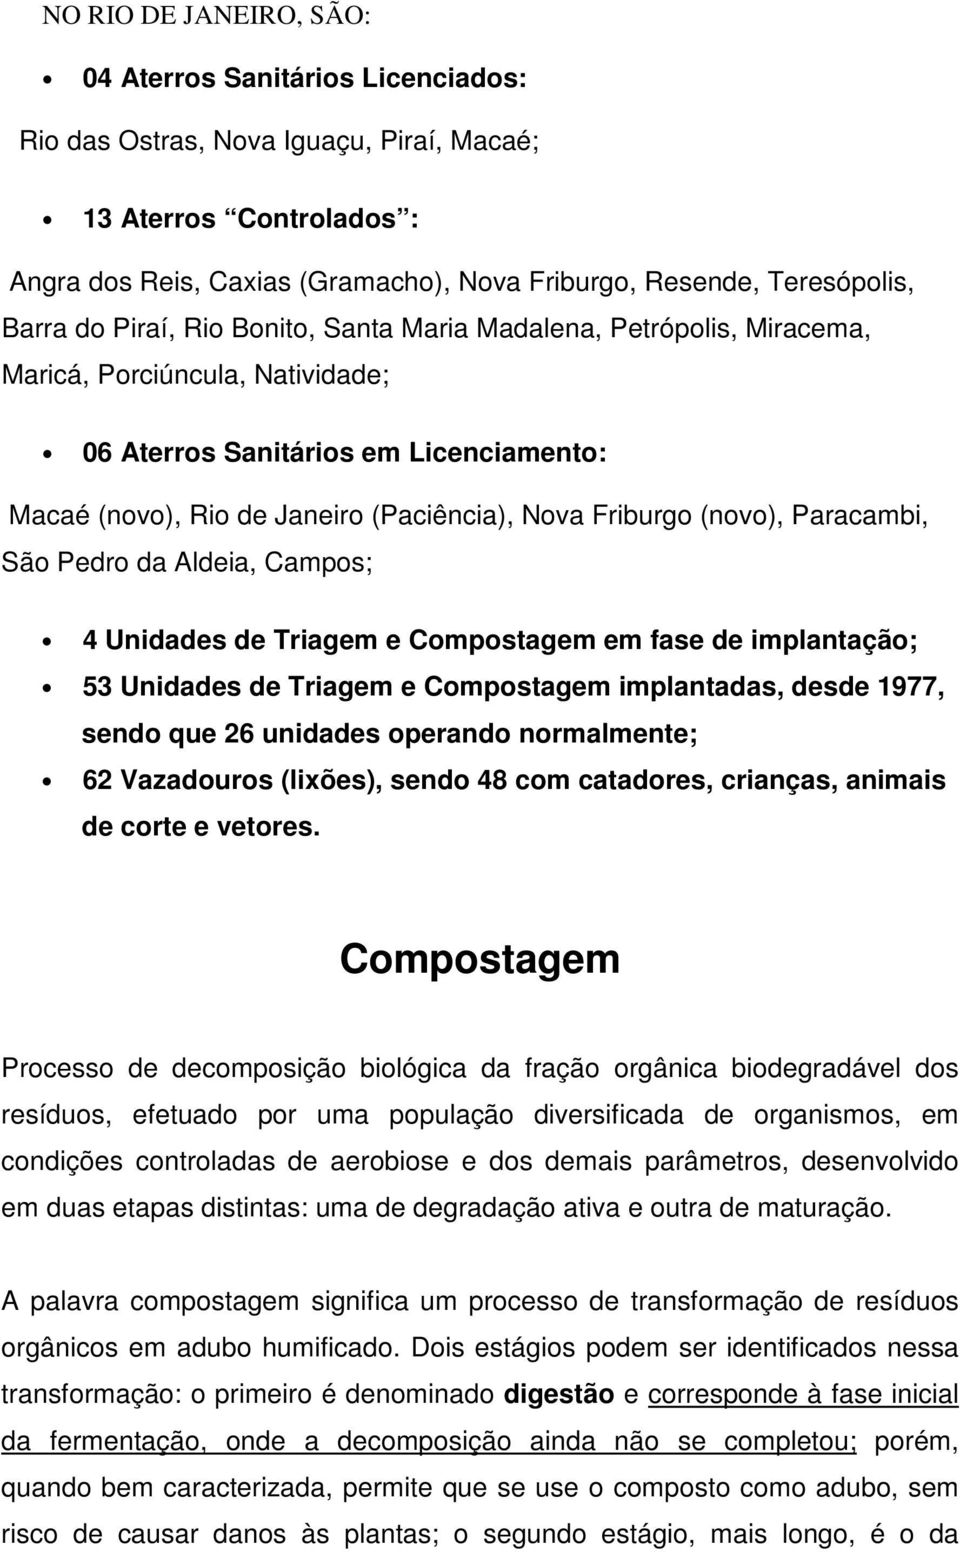 Friburgo (novo), Paracambi, São Pedro da Aldeia, Campos; 4 Unidades de Triagem e Compostagem em fase de implantação; 53 Unidades de Triagem e Compostagem implantadas, desde 1977, sendo que 26